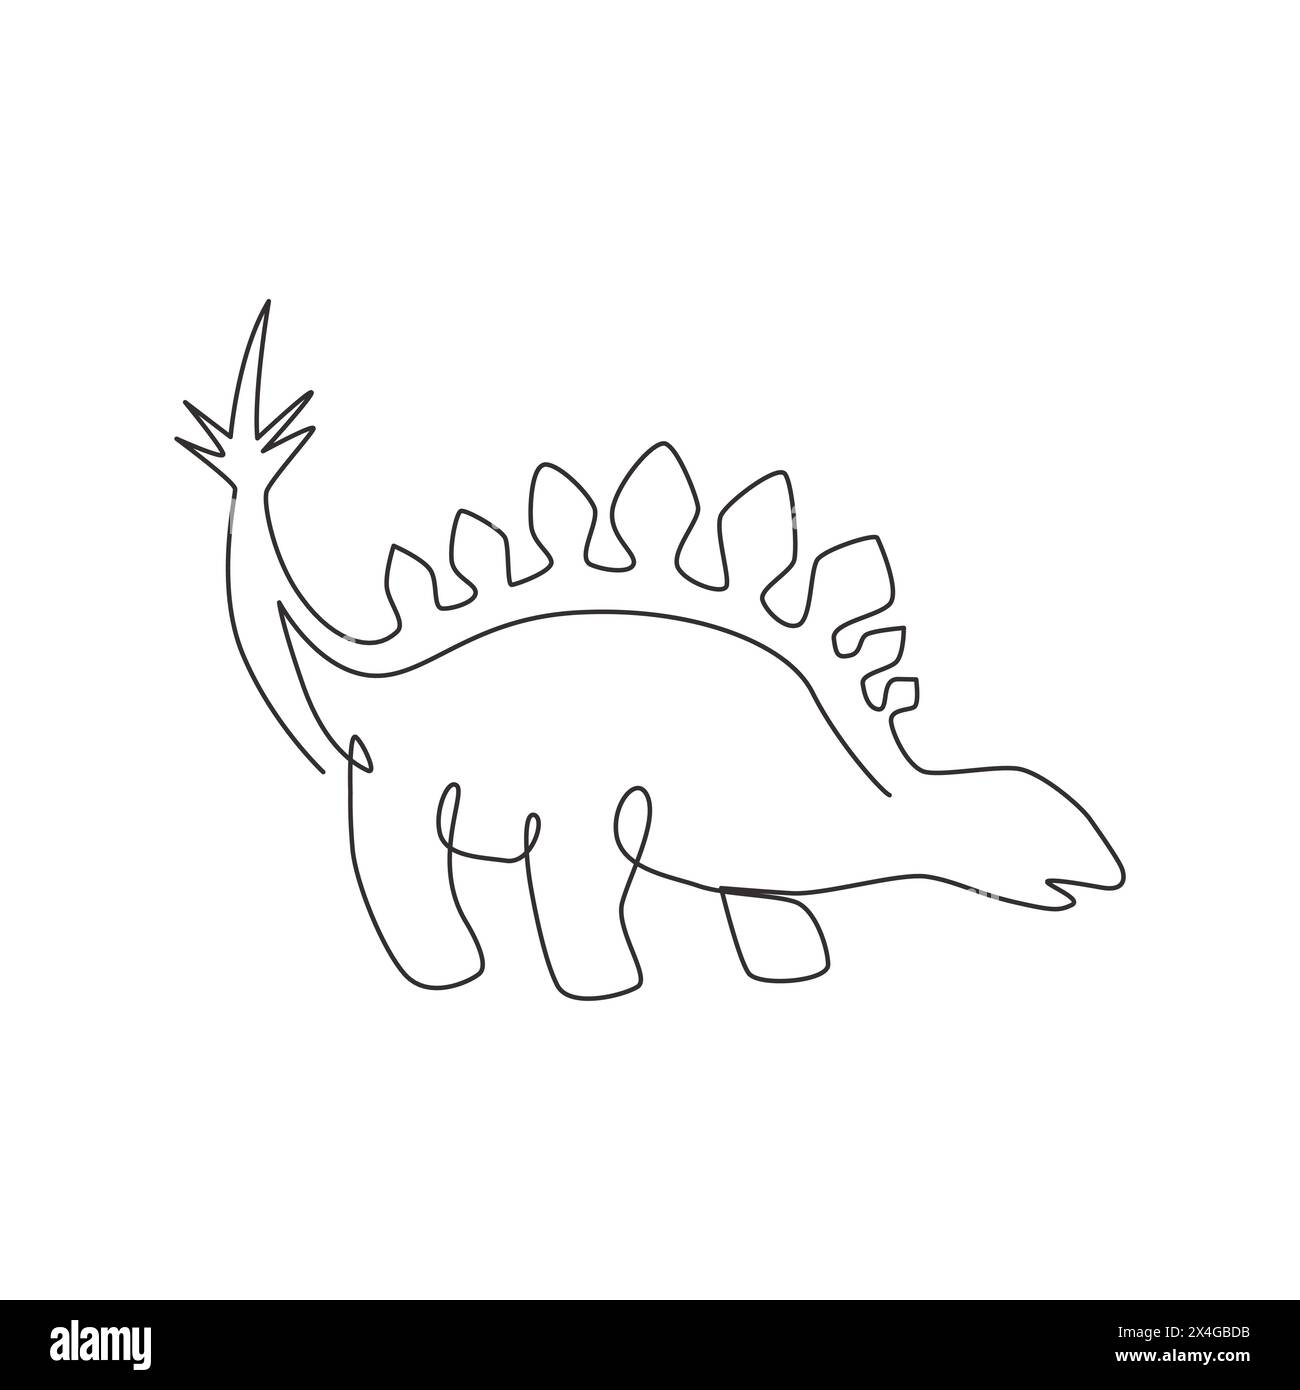 Un disegno a linea singola di stegosaurus calmo e spinoso per l'identità del logo. Concetto di mascotte animale Dino per icona del parco a tema preistorico. Continuo dinamico l Illustrazione Vettoriale